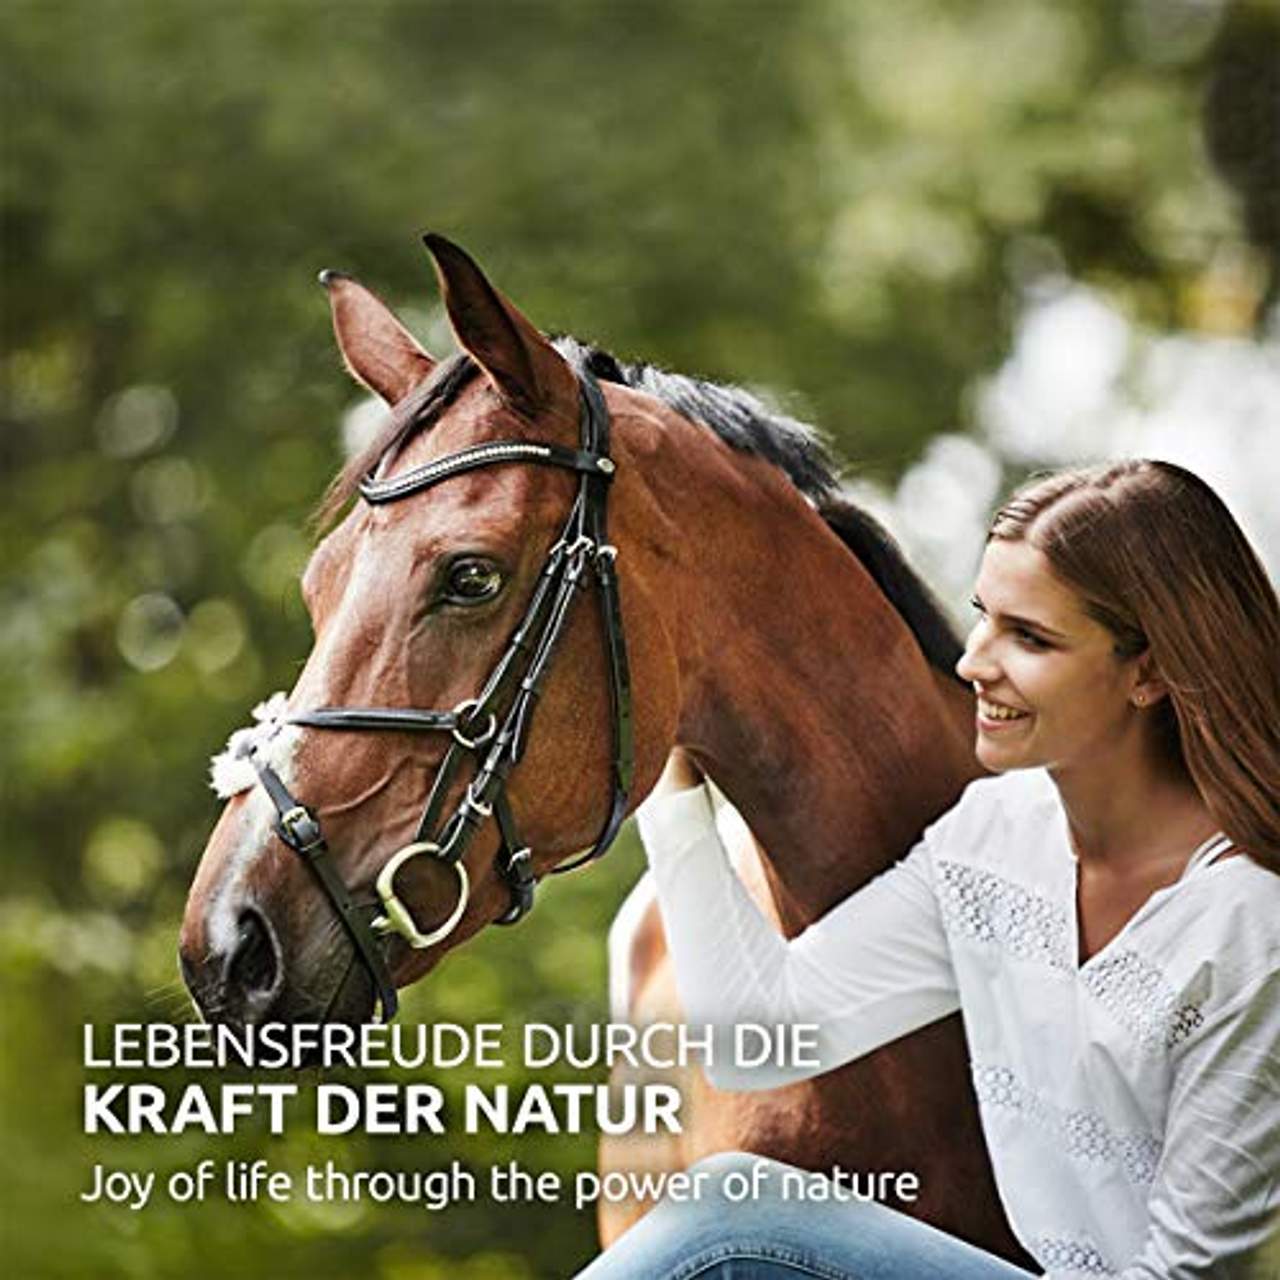 AniForte Huf-Akut Naturprodukt für Pferde 1kg